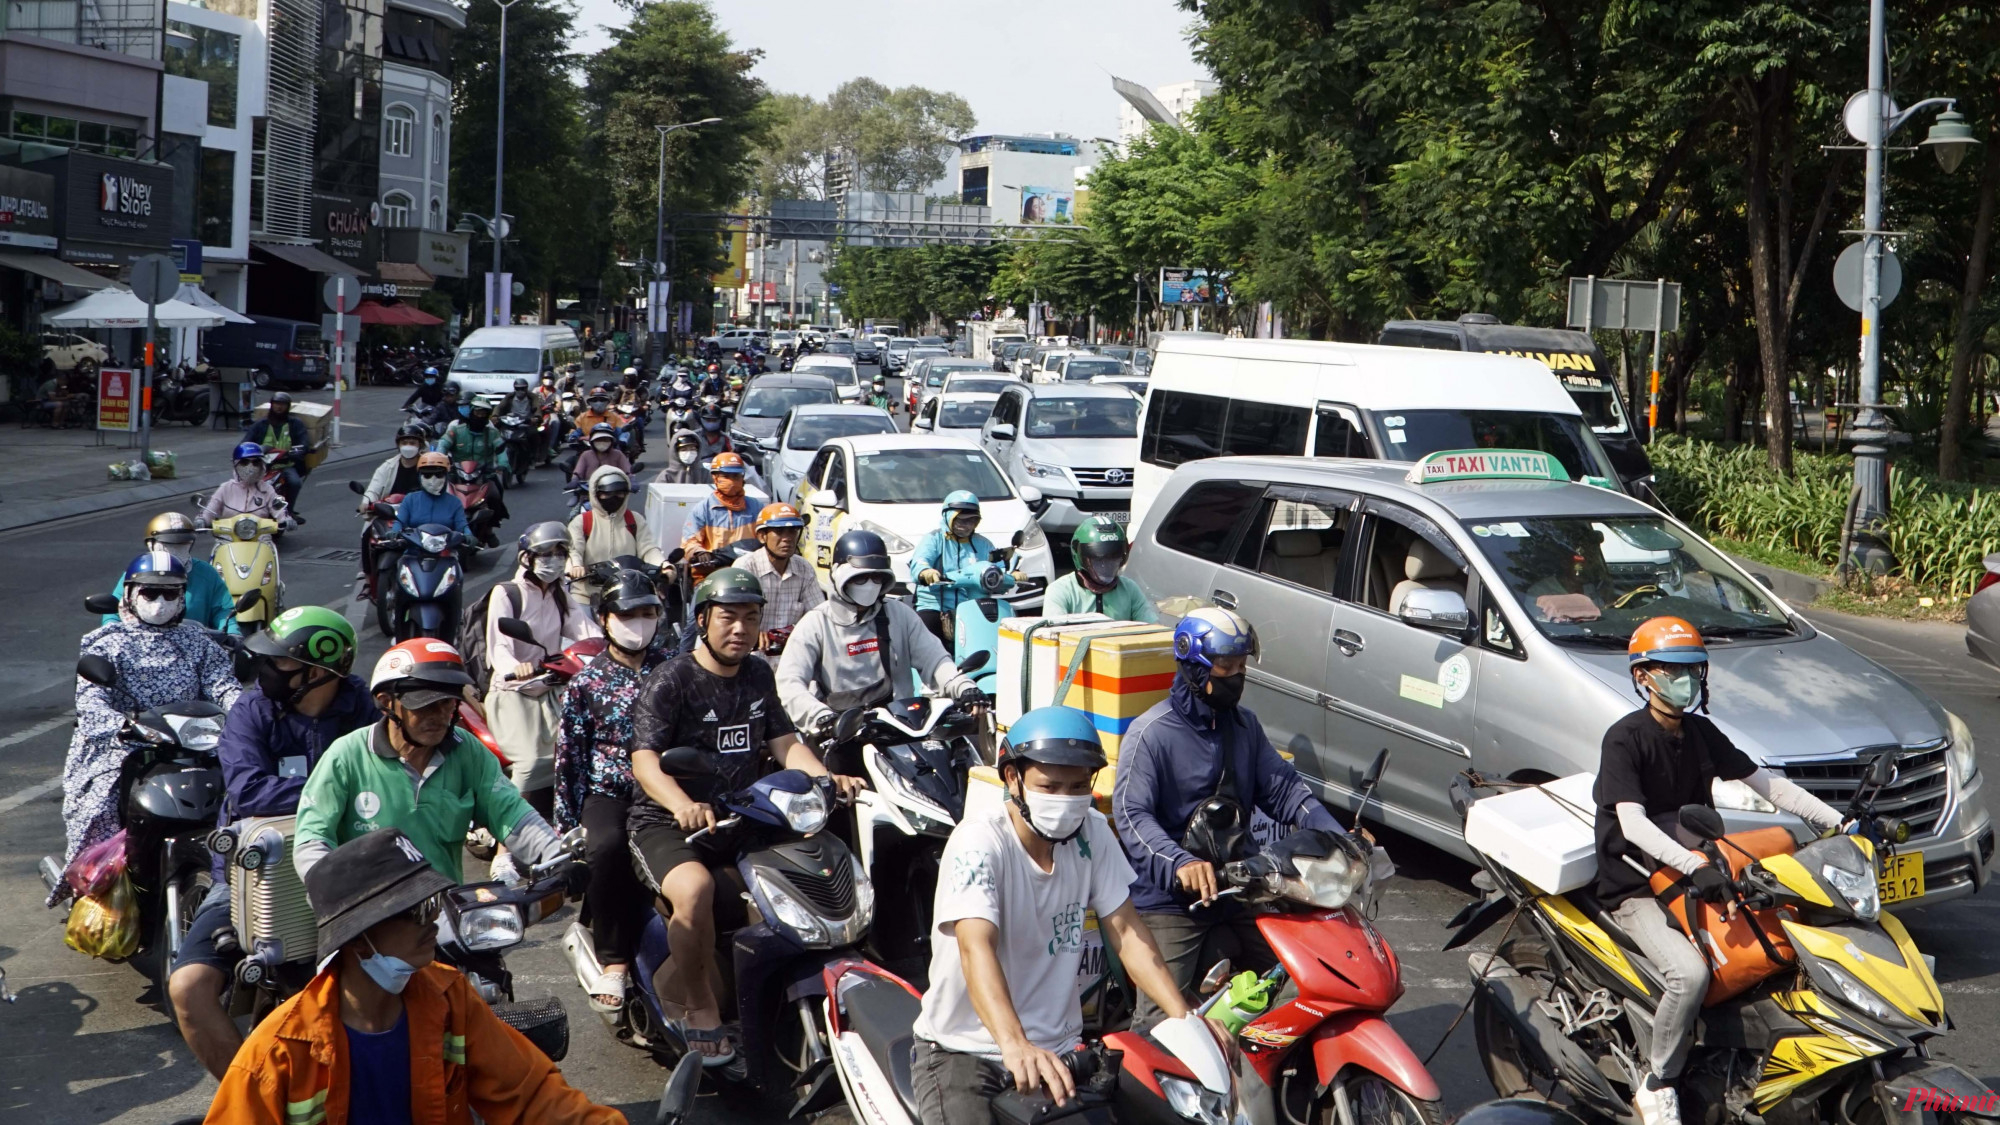 Việc lòng đường bị thu hẹp khiến tình trạng giao thông khu vực cửa ngõ Tân Sơn Nhất thường xuyên gặp cảnh ùn ứ kéo dài.